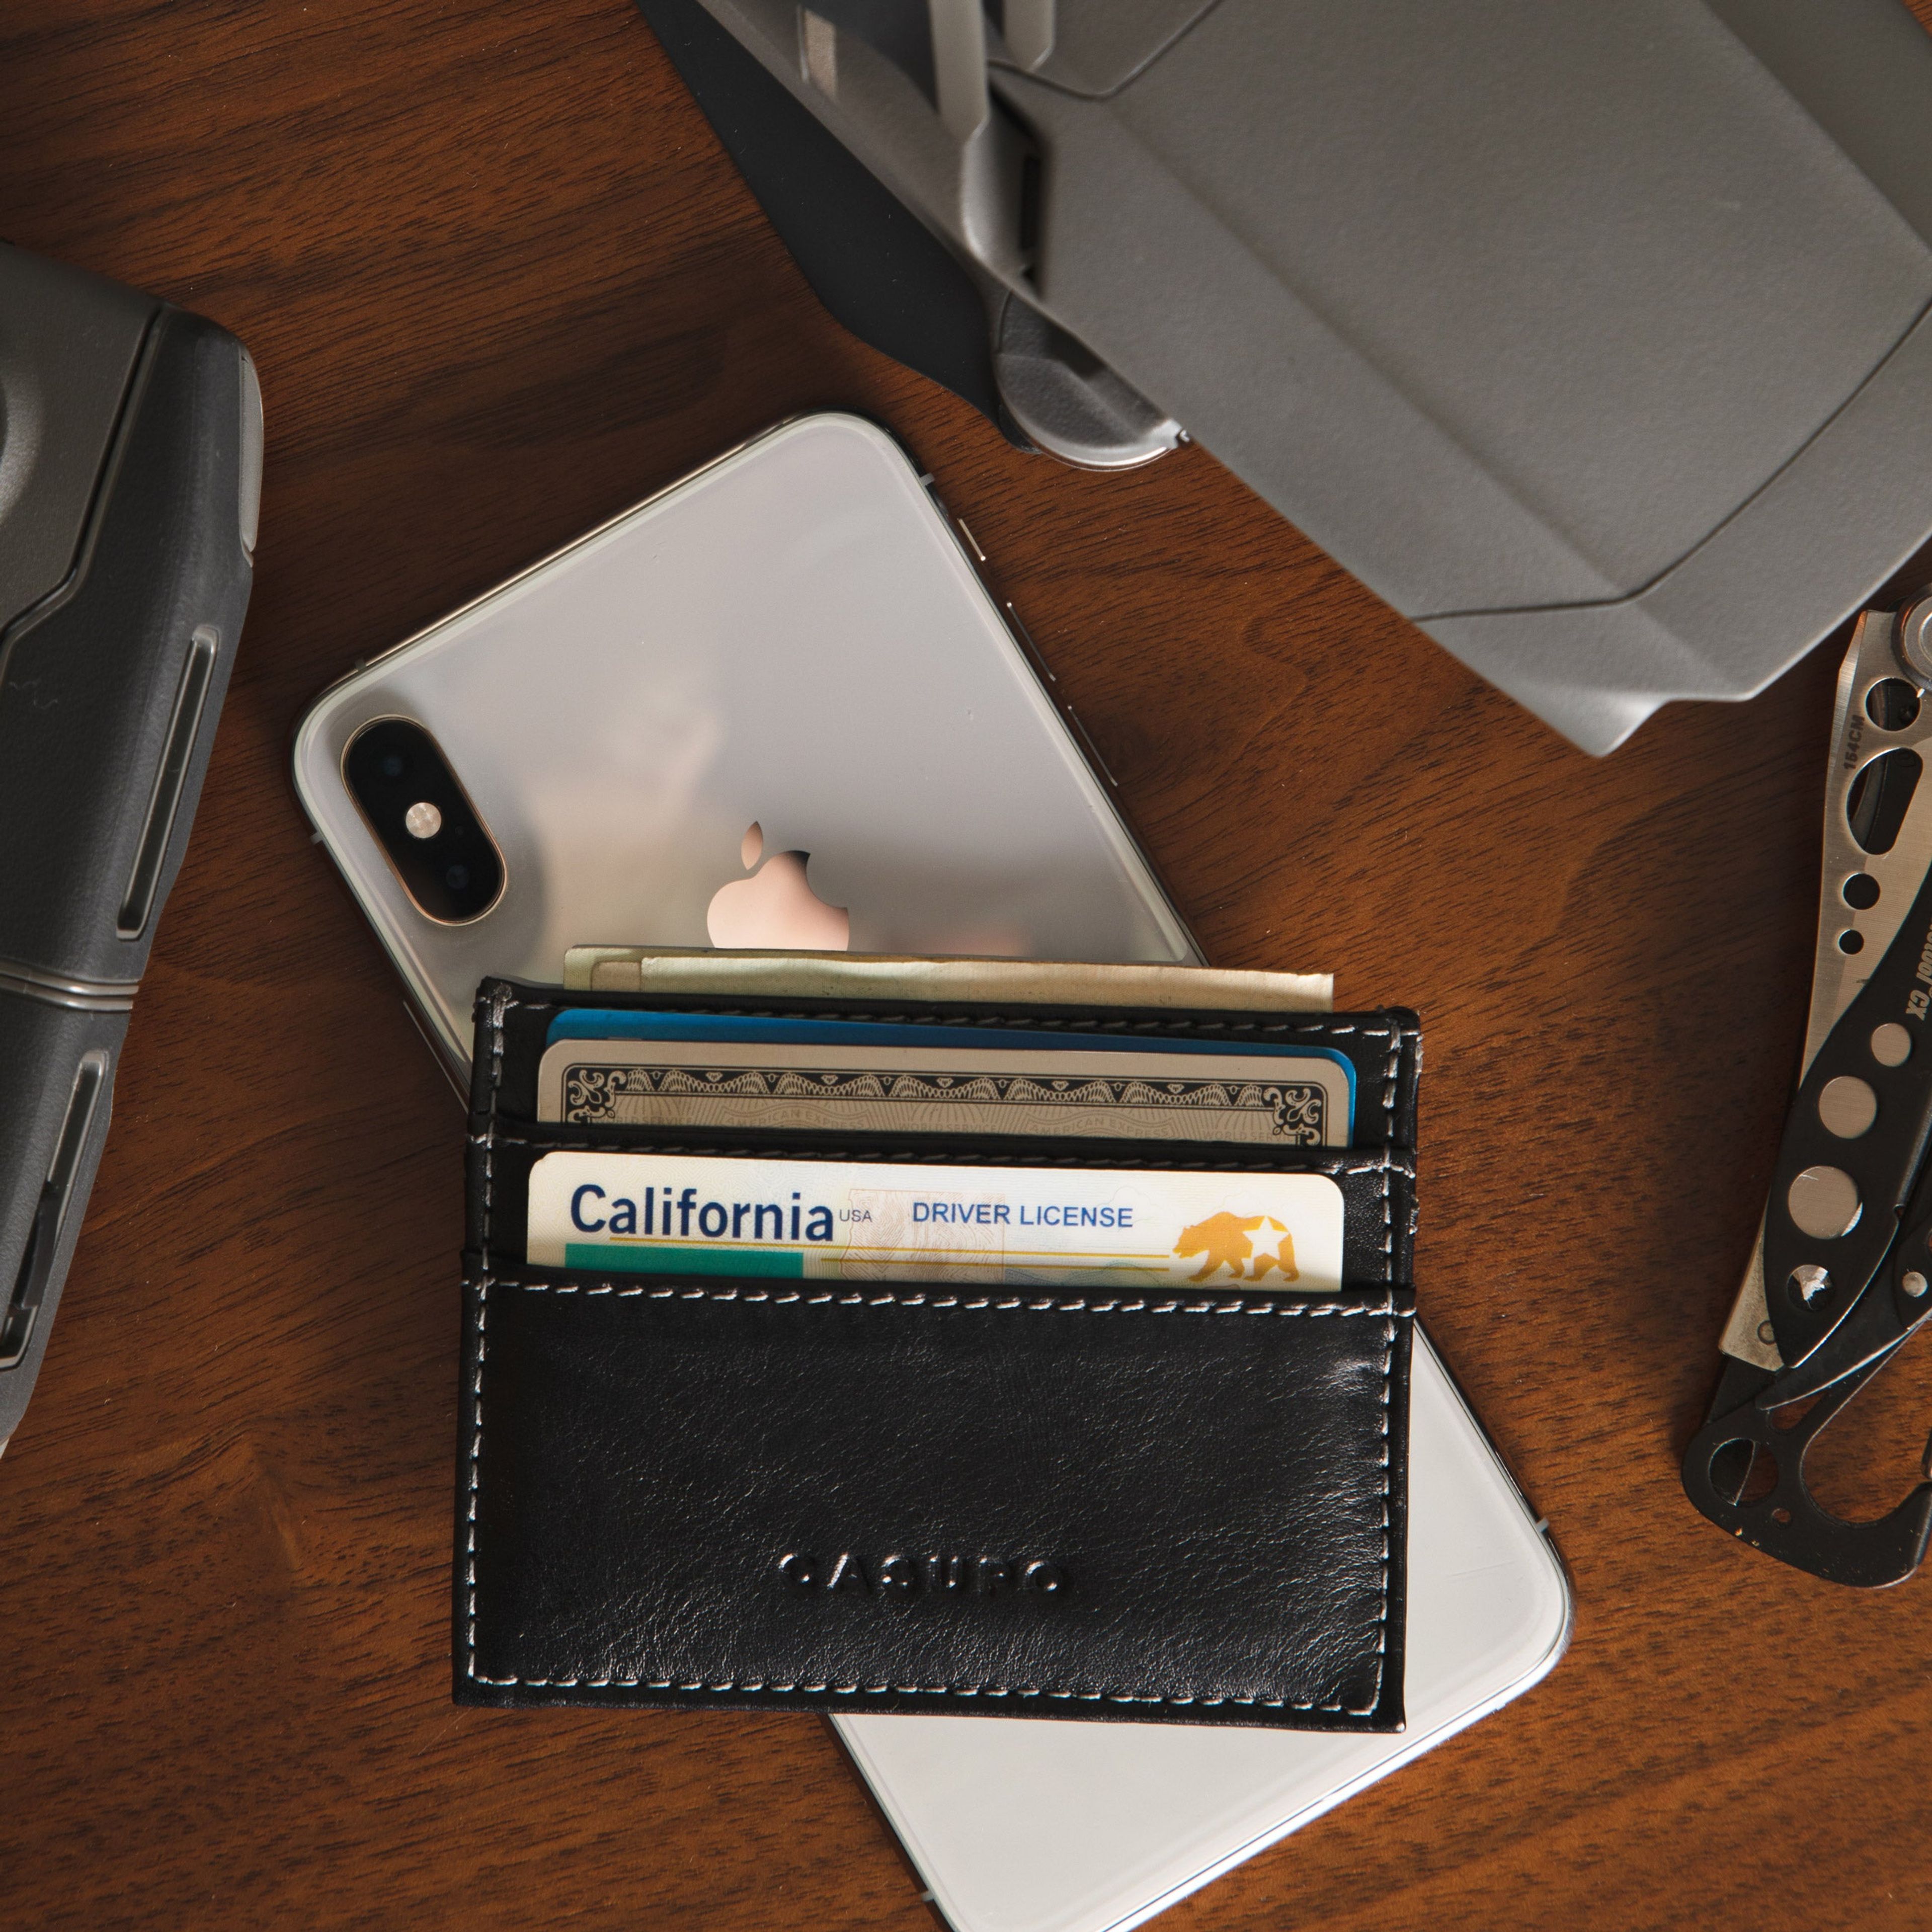 Slim Card Holder Wallet - Black